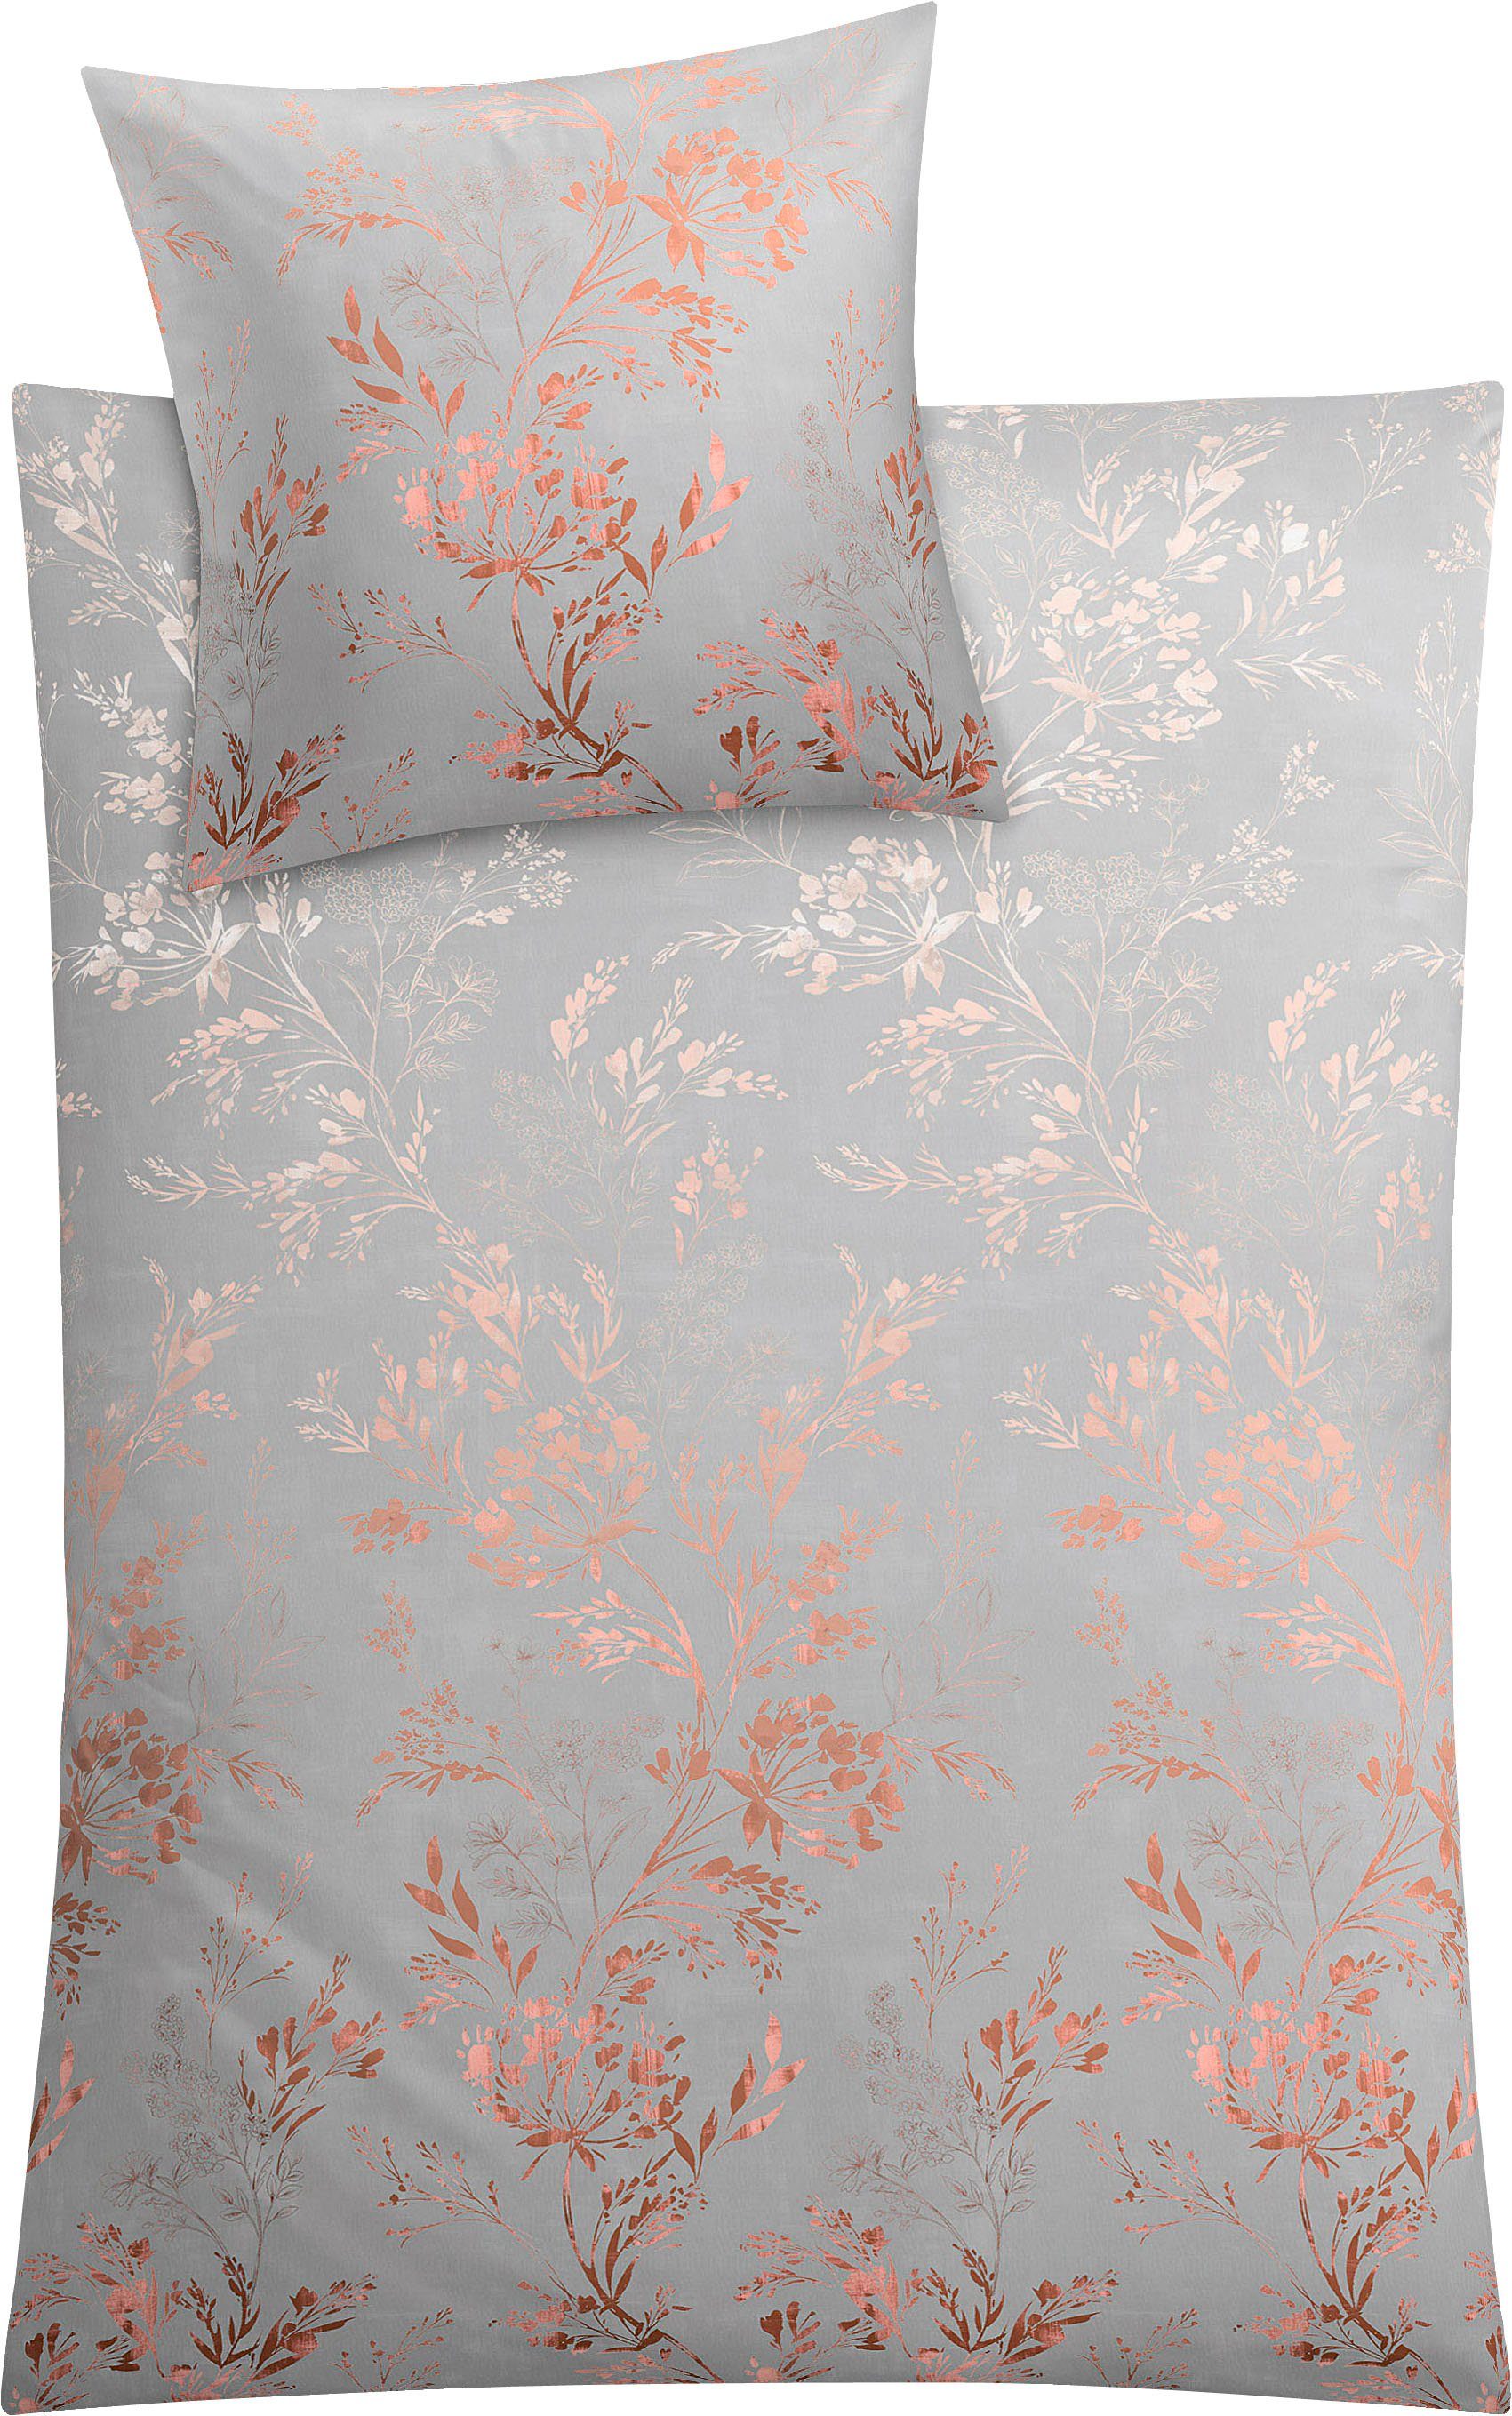 Bettwäsche Kate in Gr. 135x200 oder 155x220 cm, Kleine Wolke, Mako-Satin, 2  teilig, Bettwäsche aus Baumwolle, elegante Bettwäsche mit floralem Muster | Bettwäsche-Sets